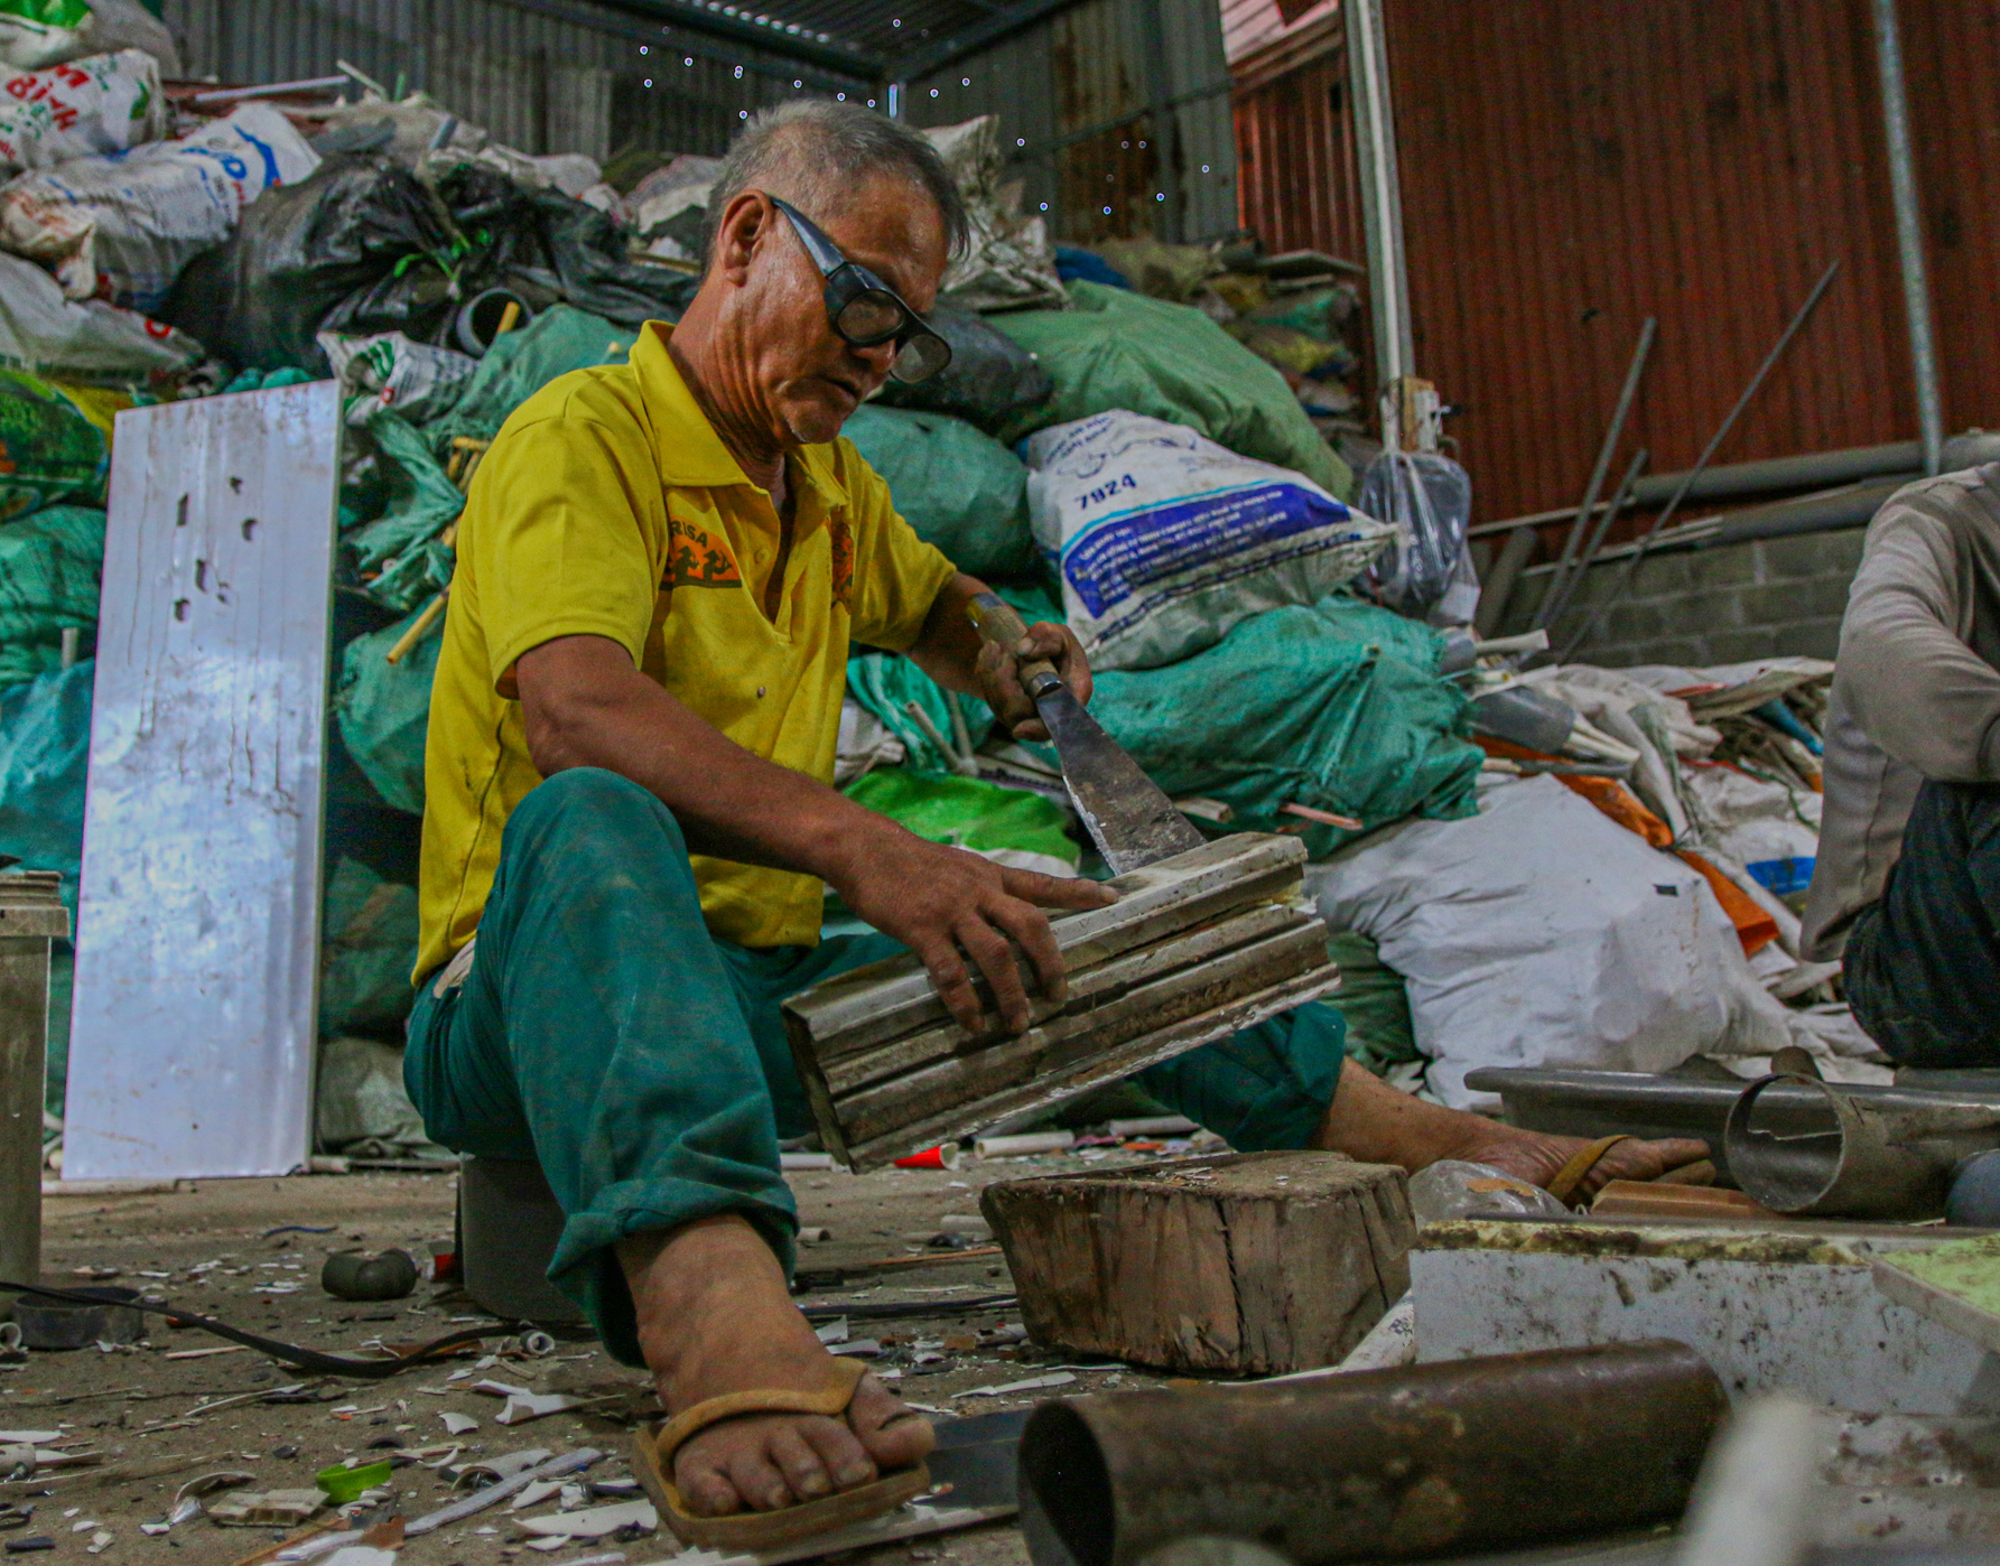 Làng nghề làm hương đen “đổi đời” nhờ rác ở Hà Nội - Ảnh 5.